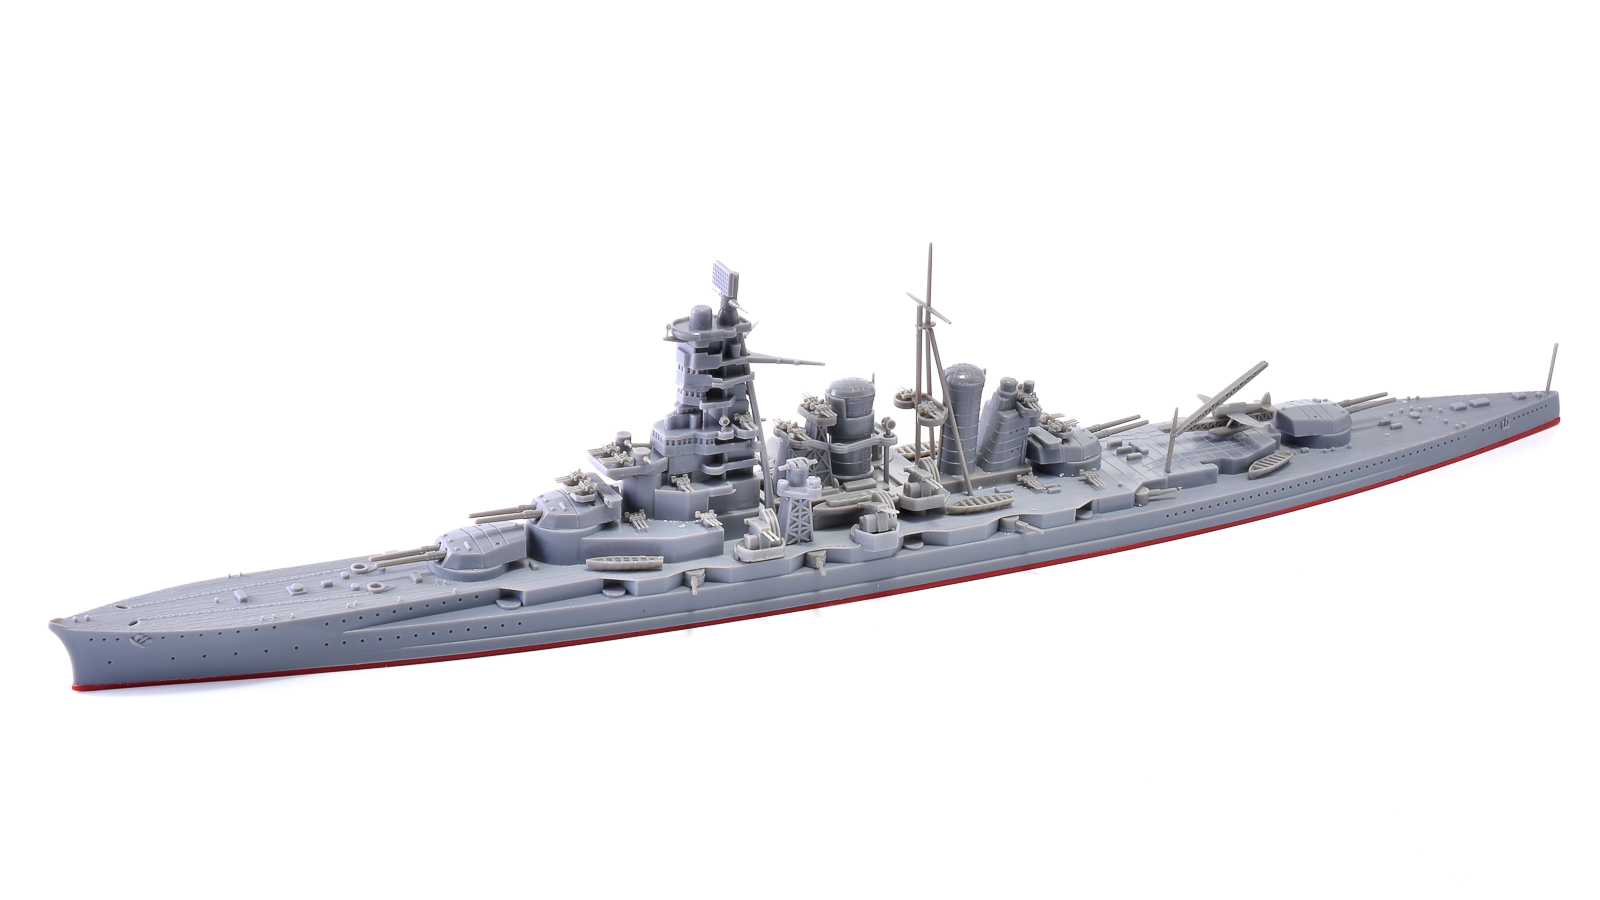 発売から30年のベテラン「ハセガワ 1/700 日本海軍戦艦 金剛」が気づか 